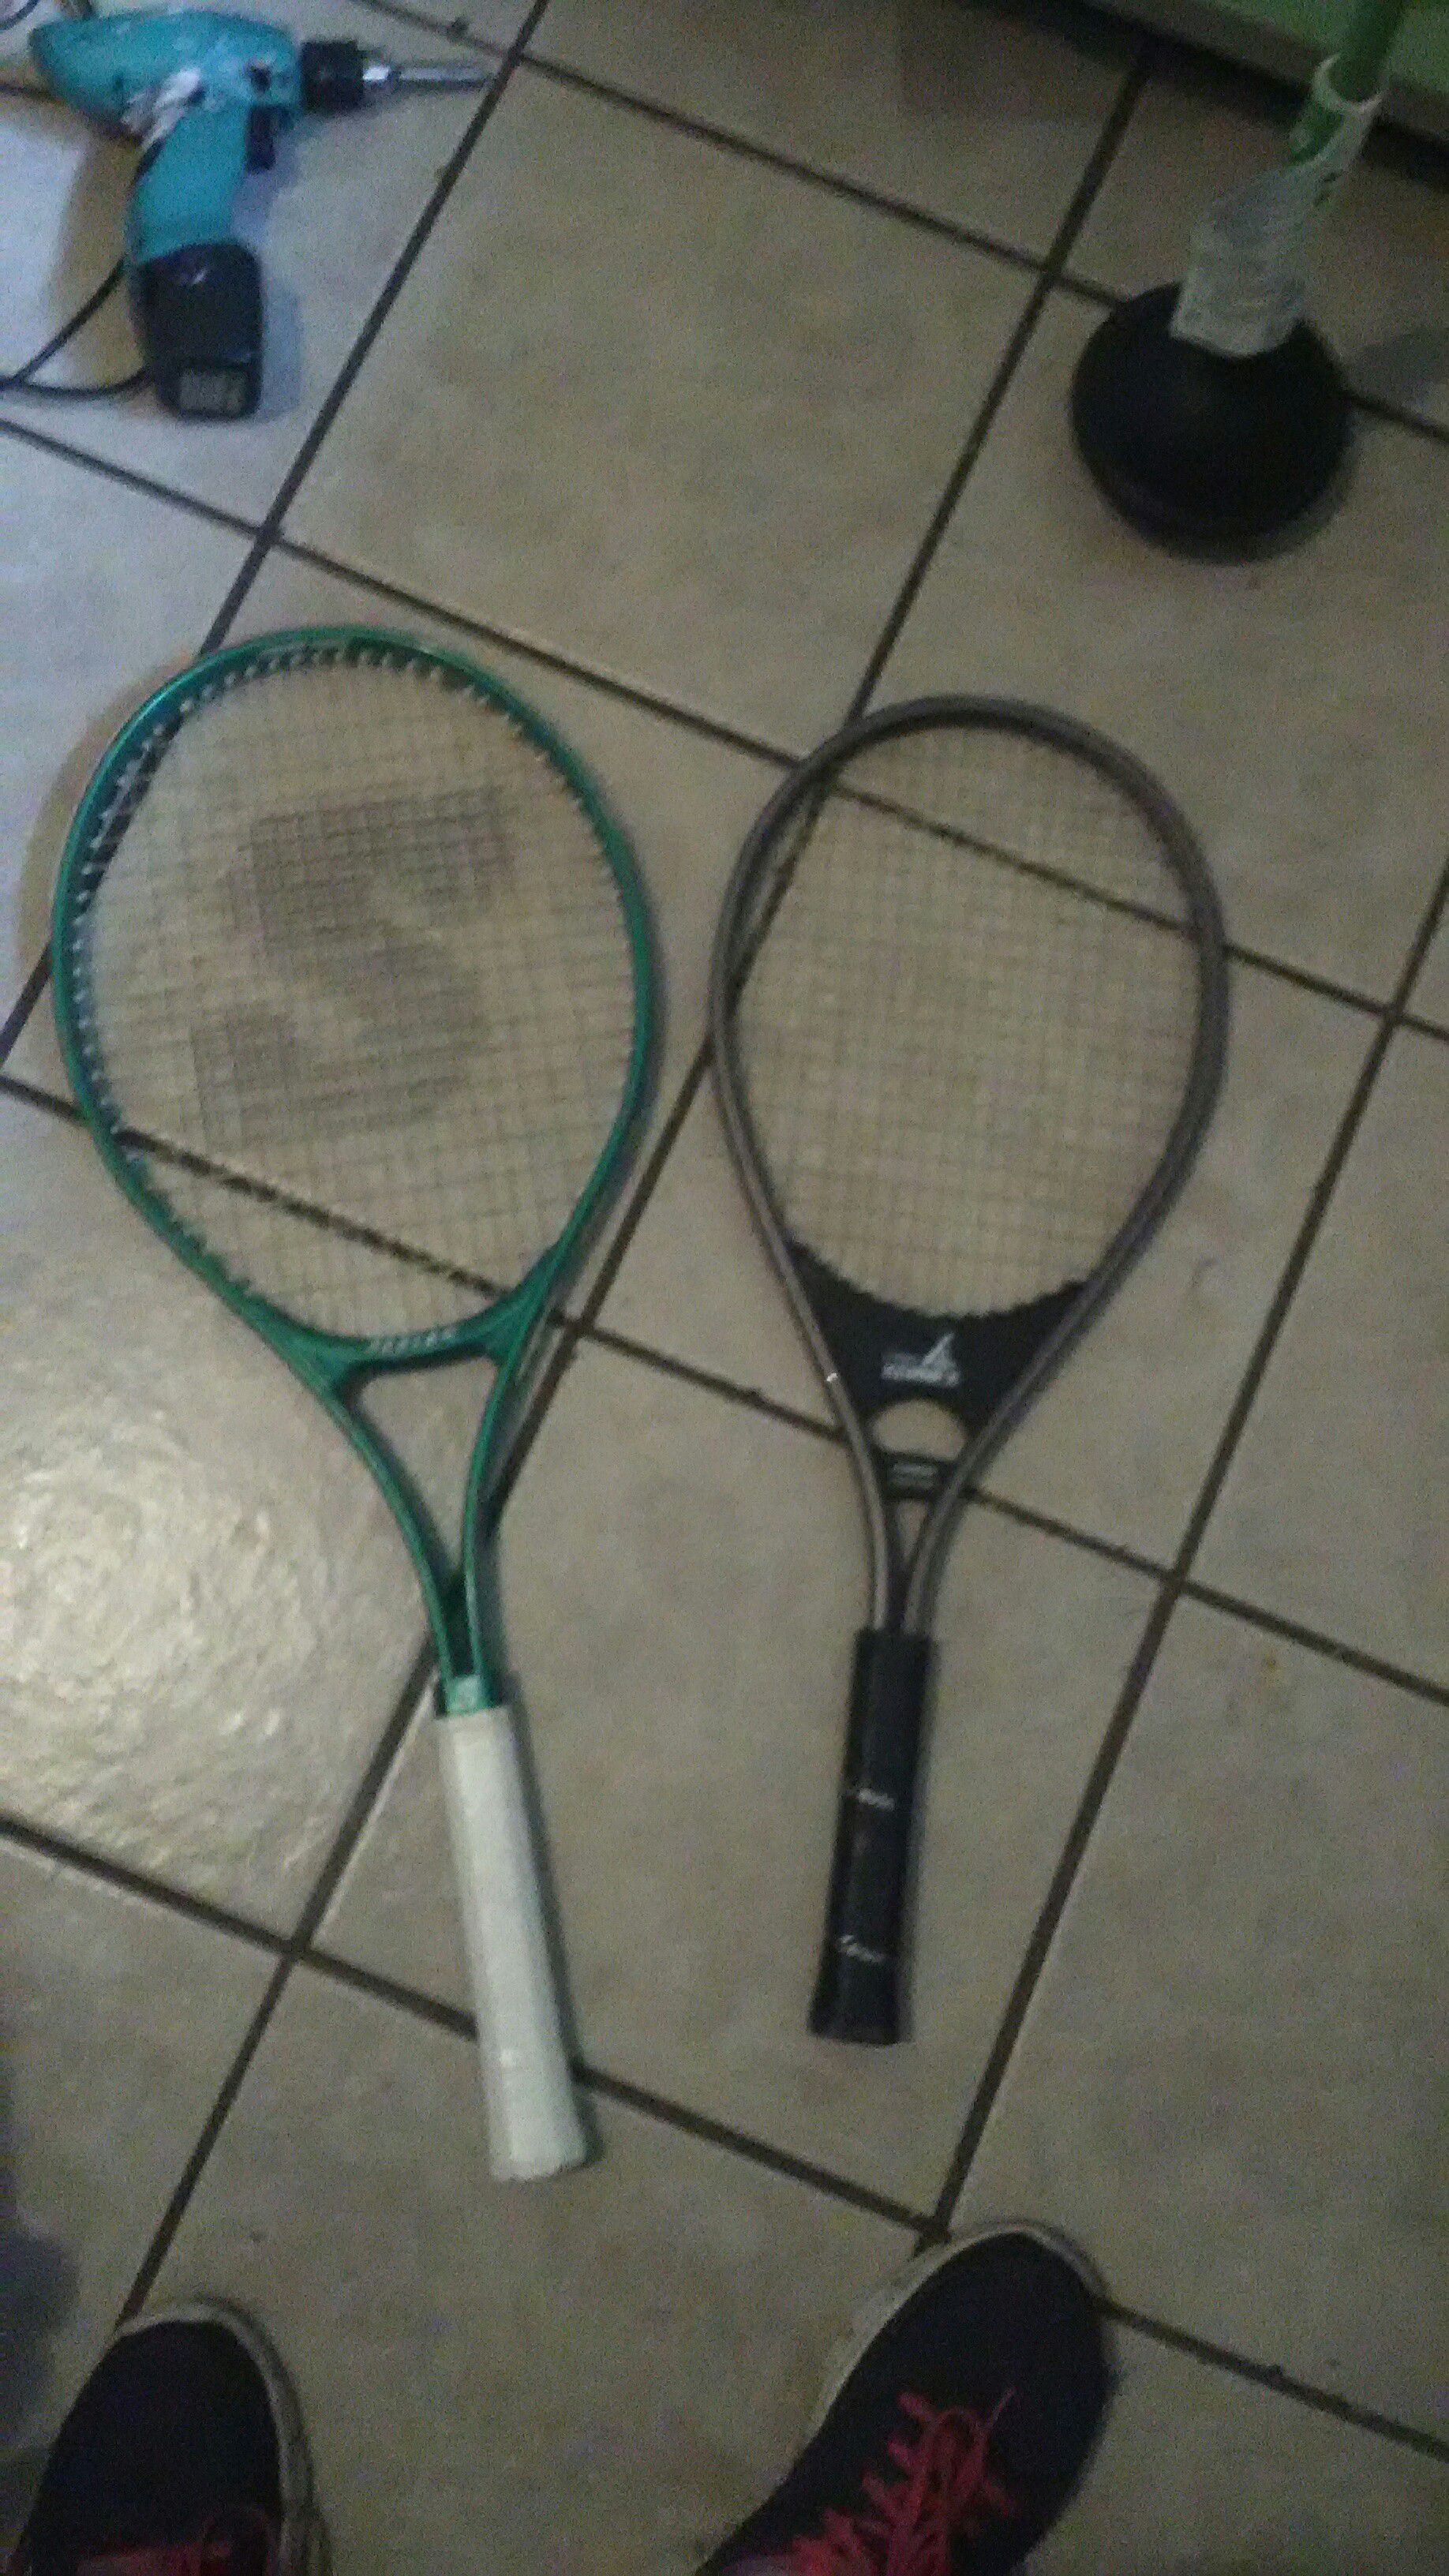 2 tennis Rackets